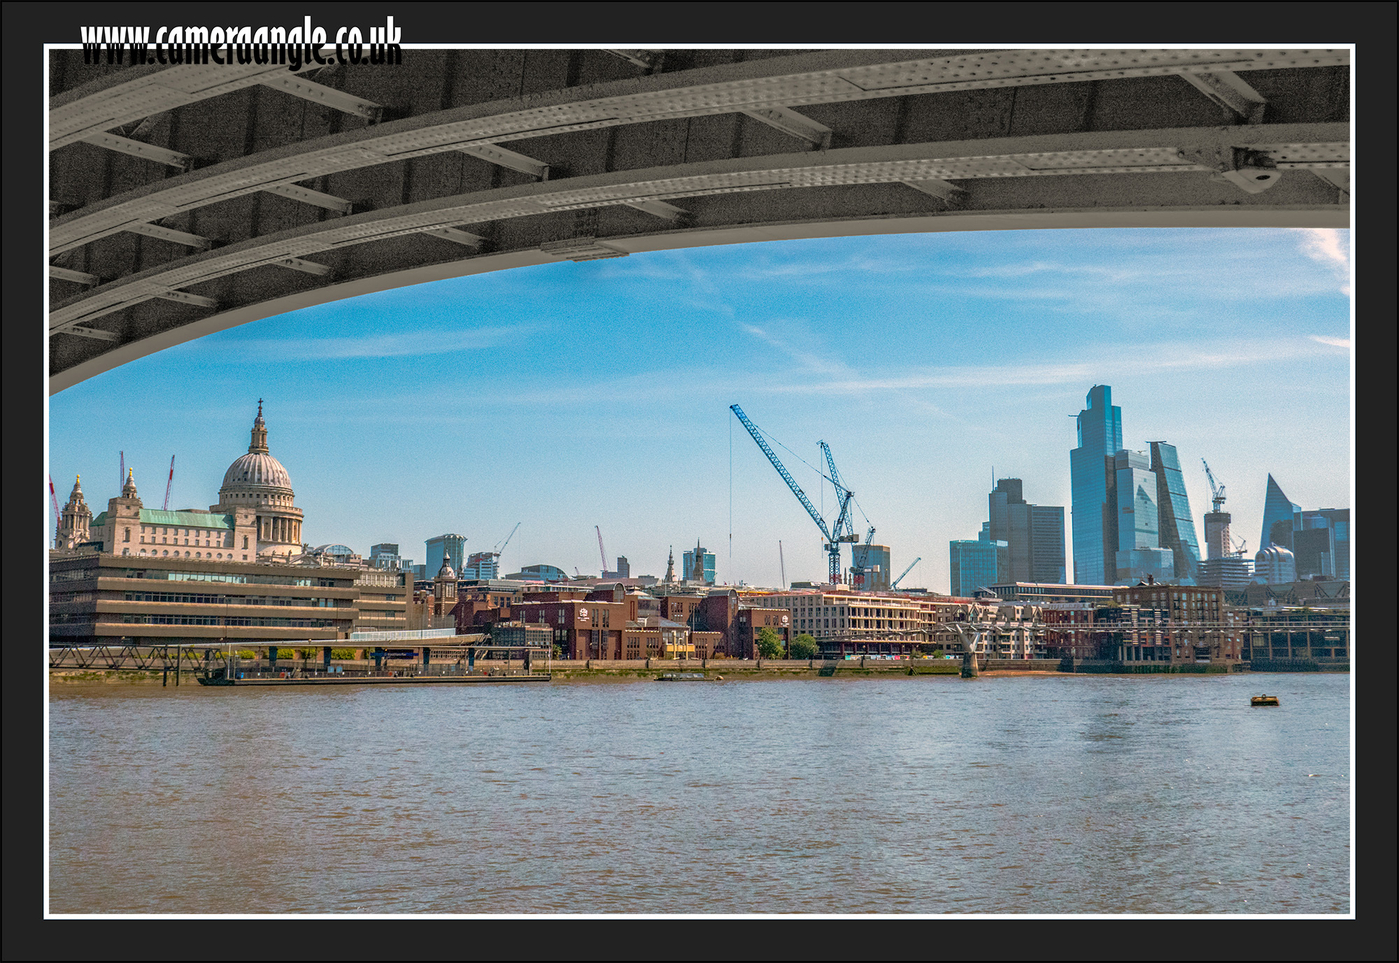 London_Bridge_View
View from under a London Bridge
Keywords: London Bridge View